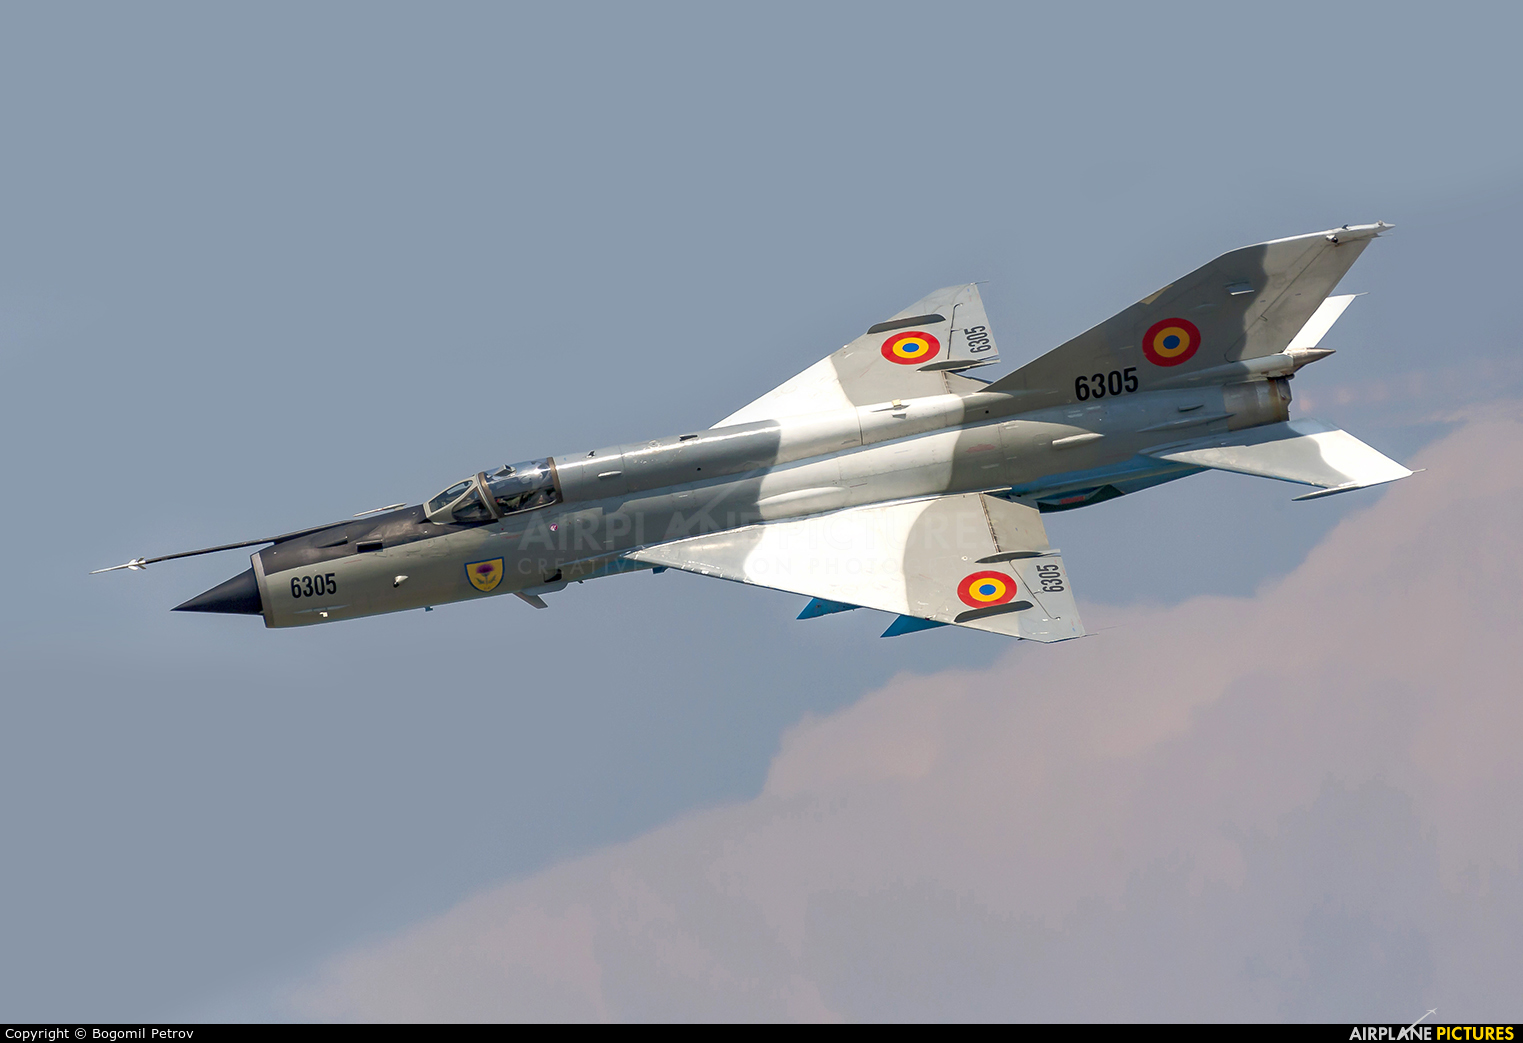 Romania - Air Force 6305 aircraft at Bucharest - Aurel Vlaicu Intl